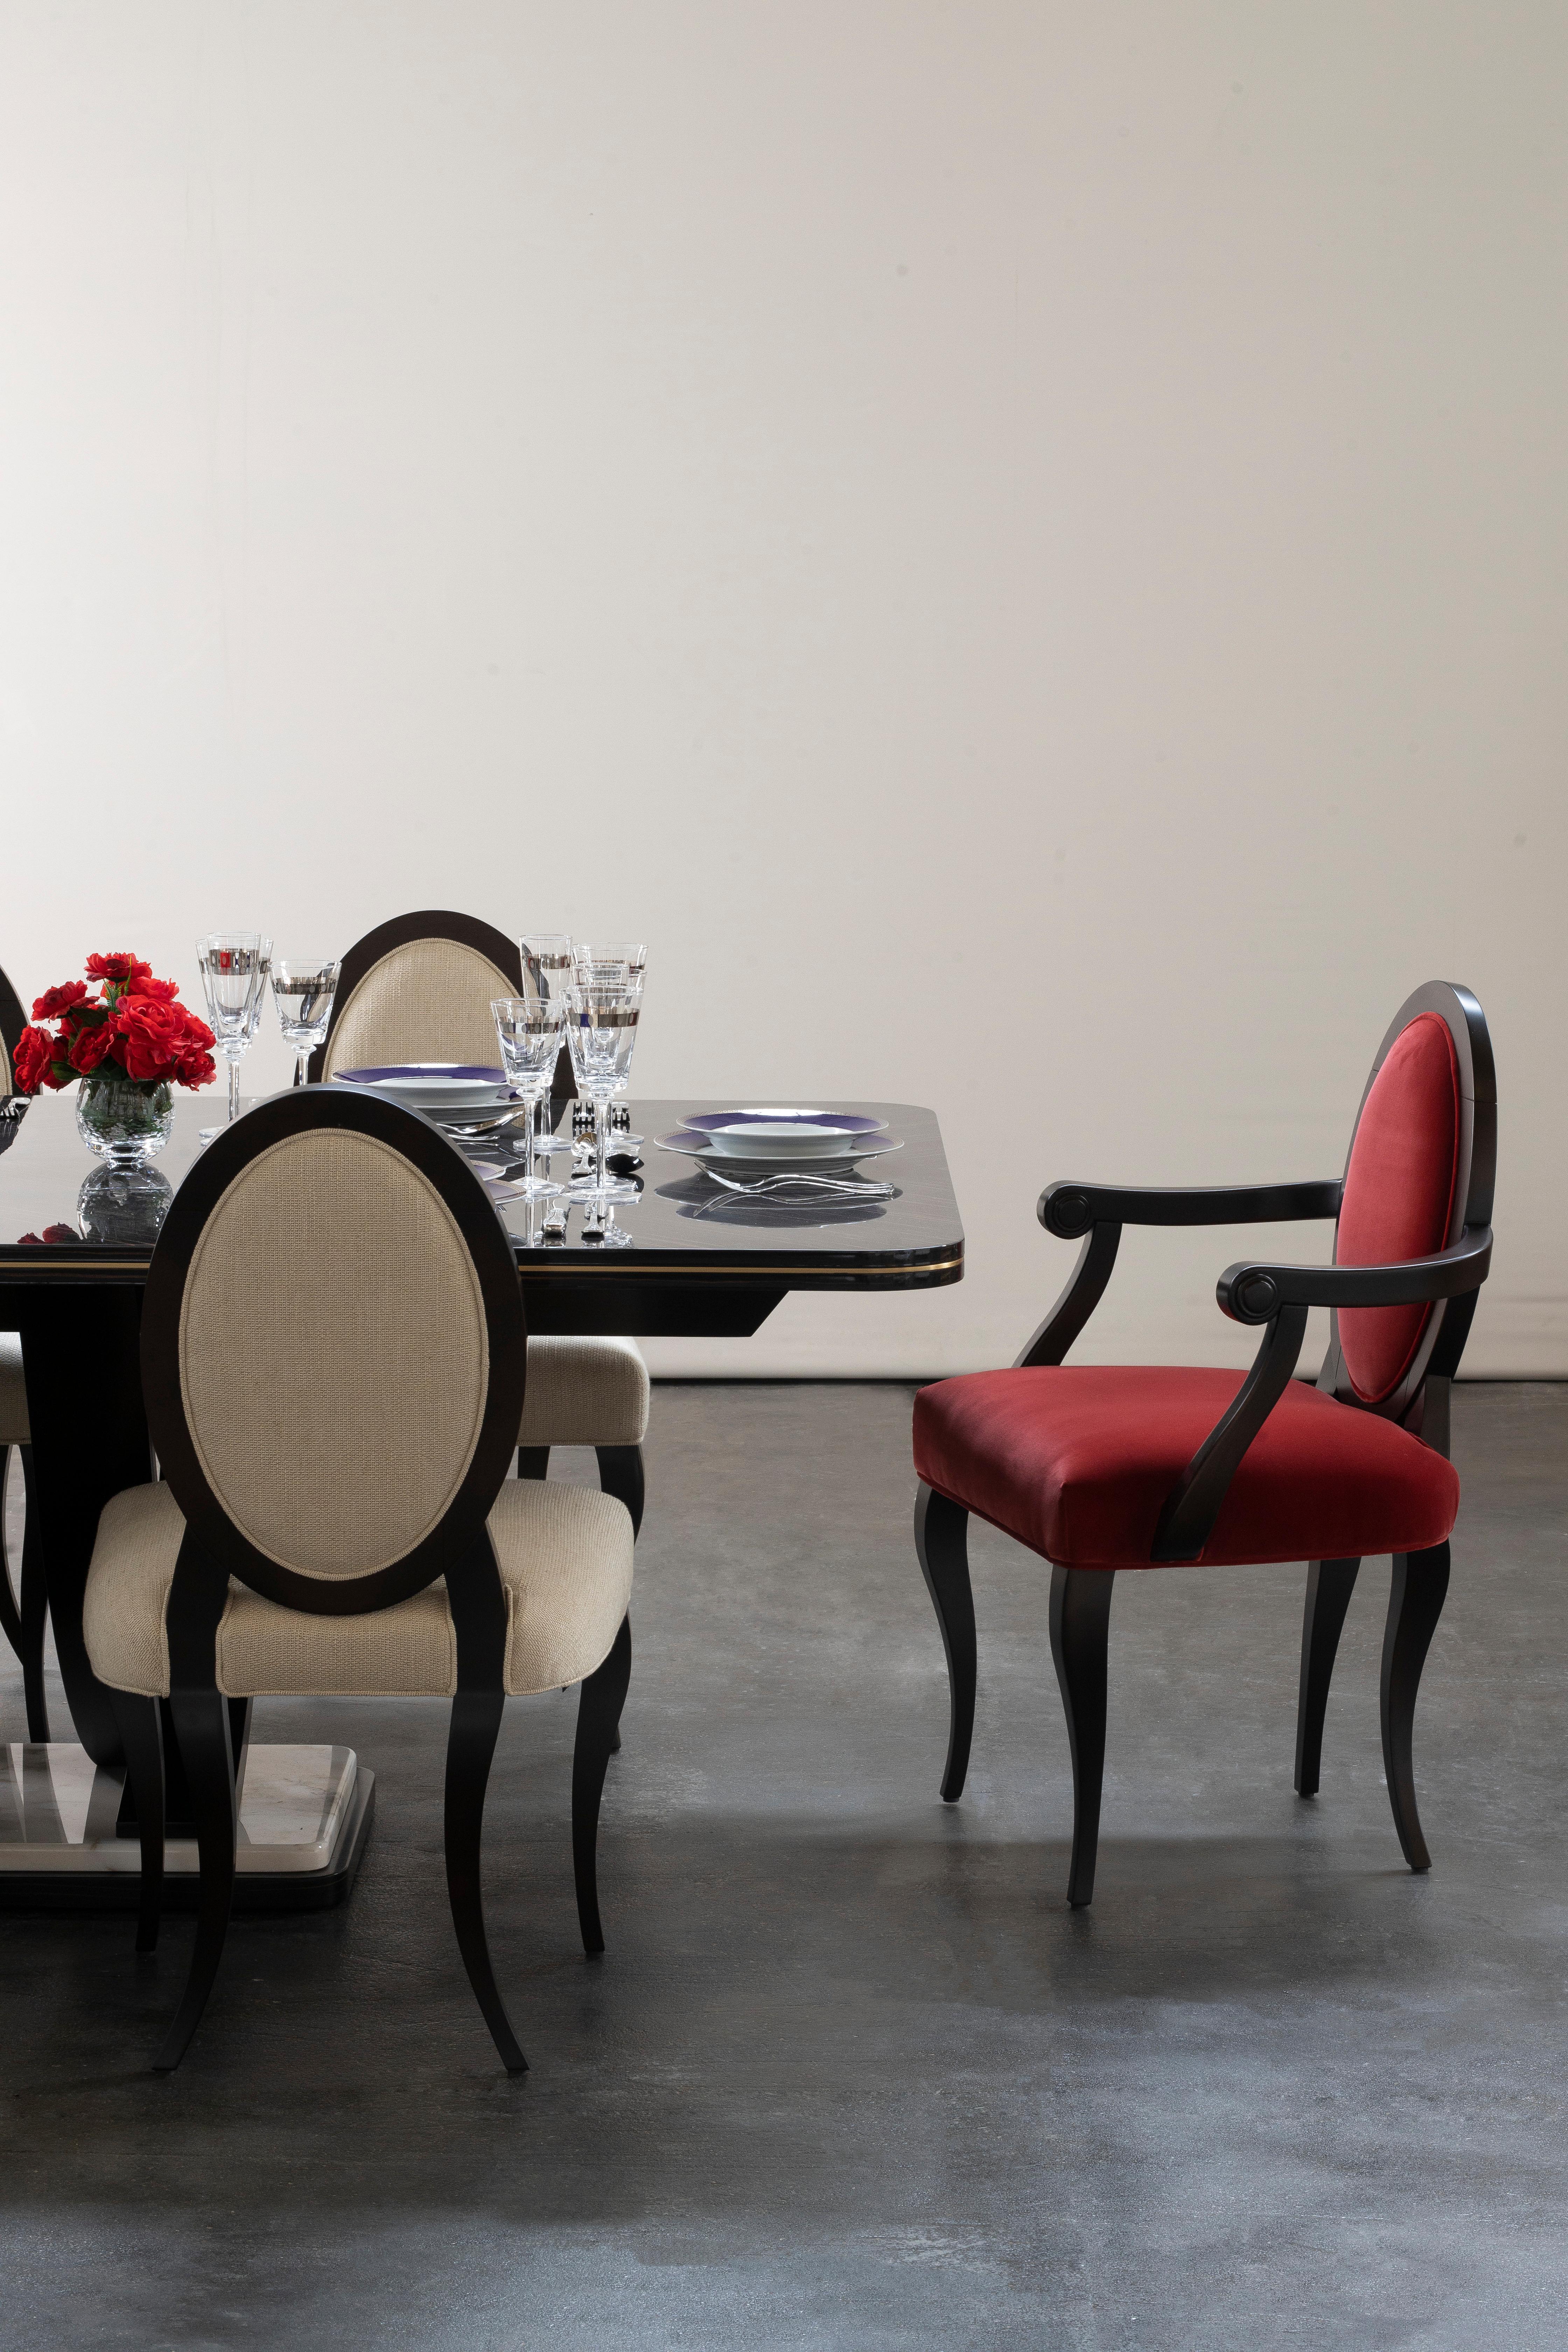 Chaise Ellipse, Collection S, fabriquée à la main au Portugal - Europe par GF Modern.

La chaise Ellipse est une pièce classique et confortable pour toutes les occasions. La combinaison harmonieuse entre le velours de coton rouge et le hêtre